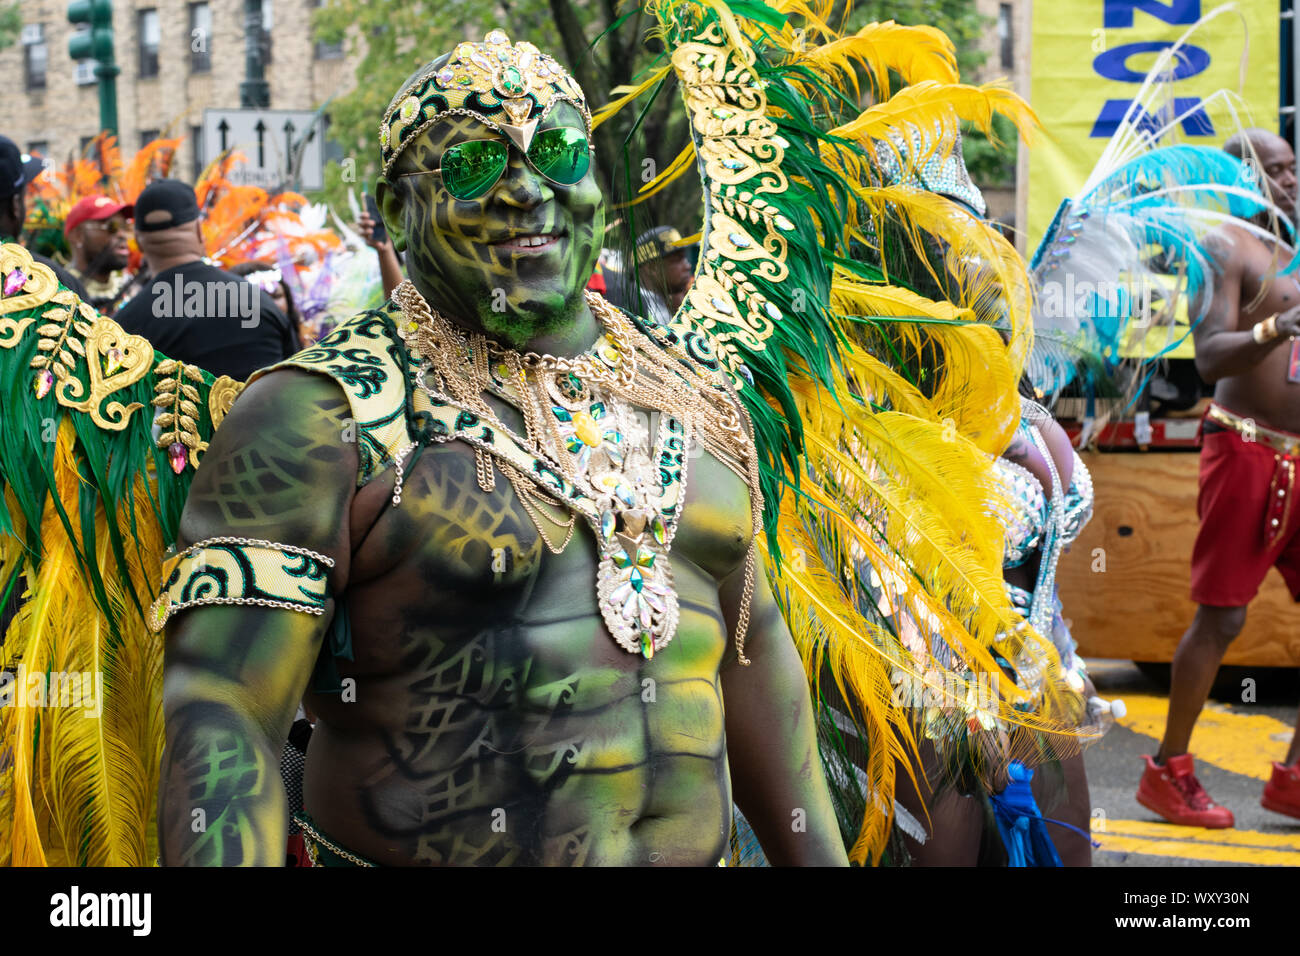 Stolz auf seine Körperbemalung blickt ein Teilnehmer der West Indian Day Parade di New York City in die Kamera. Auf dem Rücken trägt er Federschmuck. Foto Stock